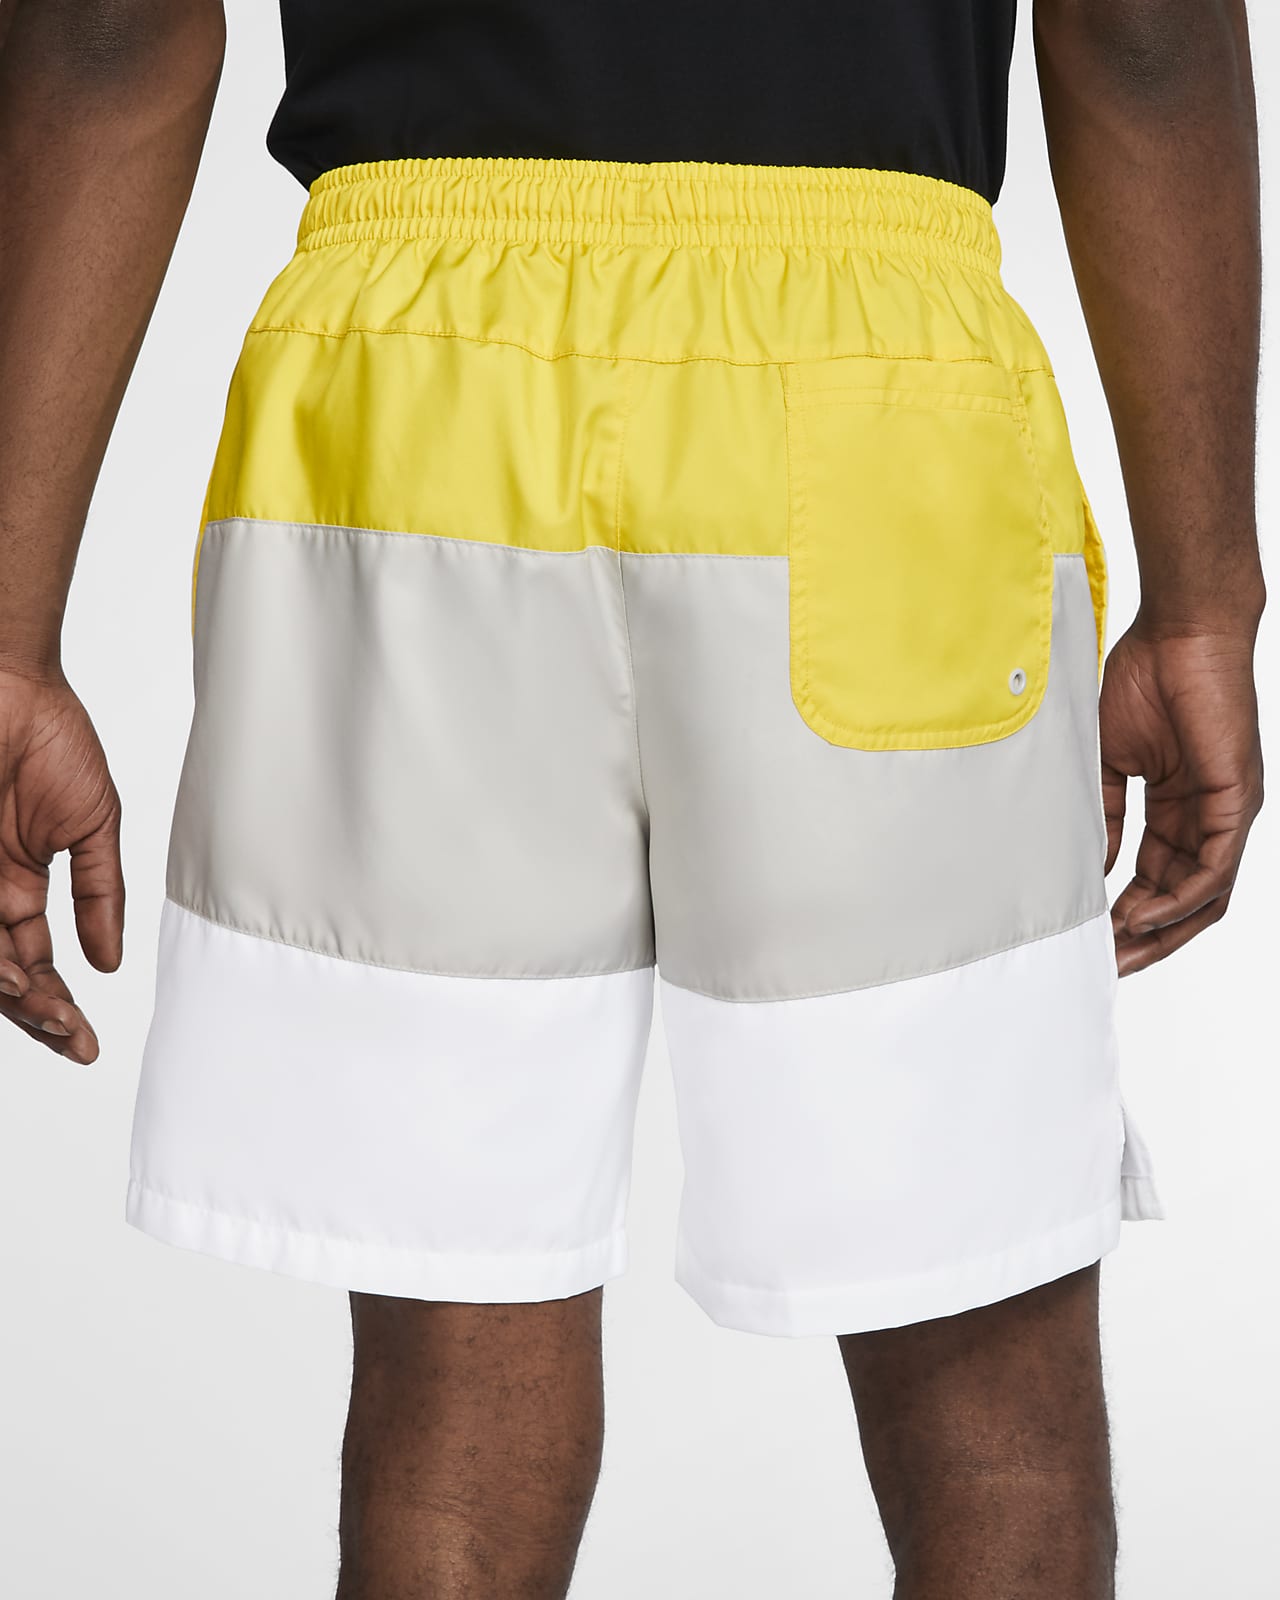 nike yellow woven shorts